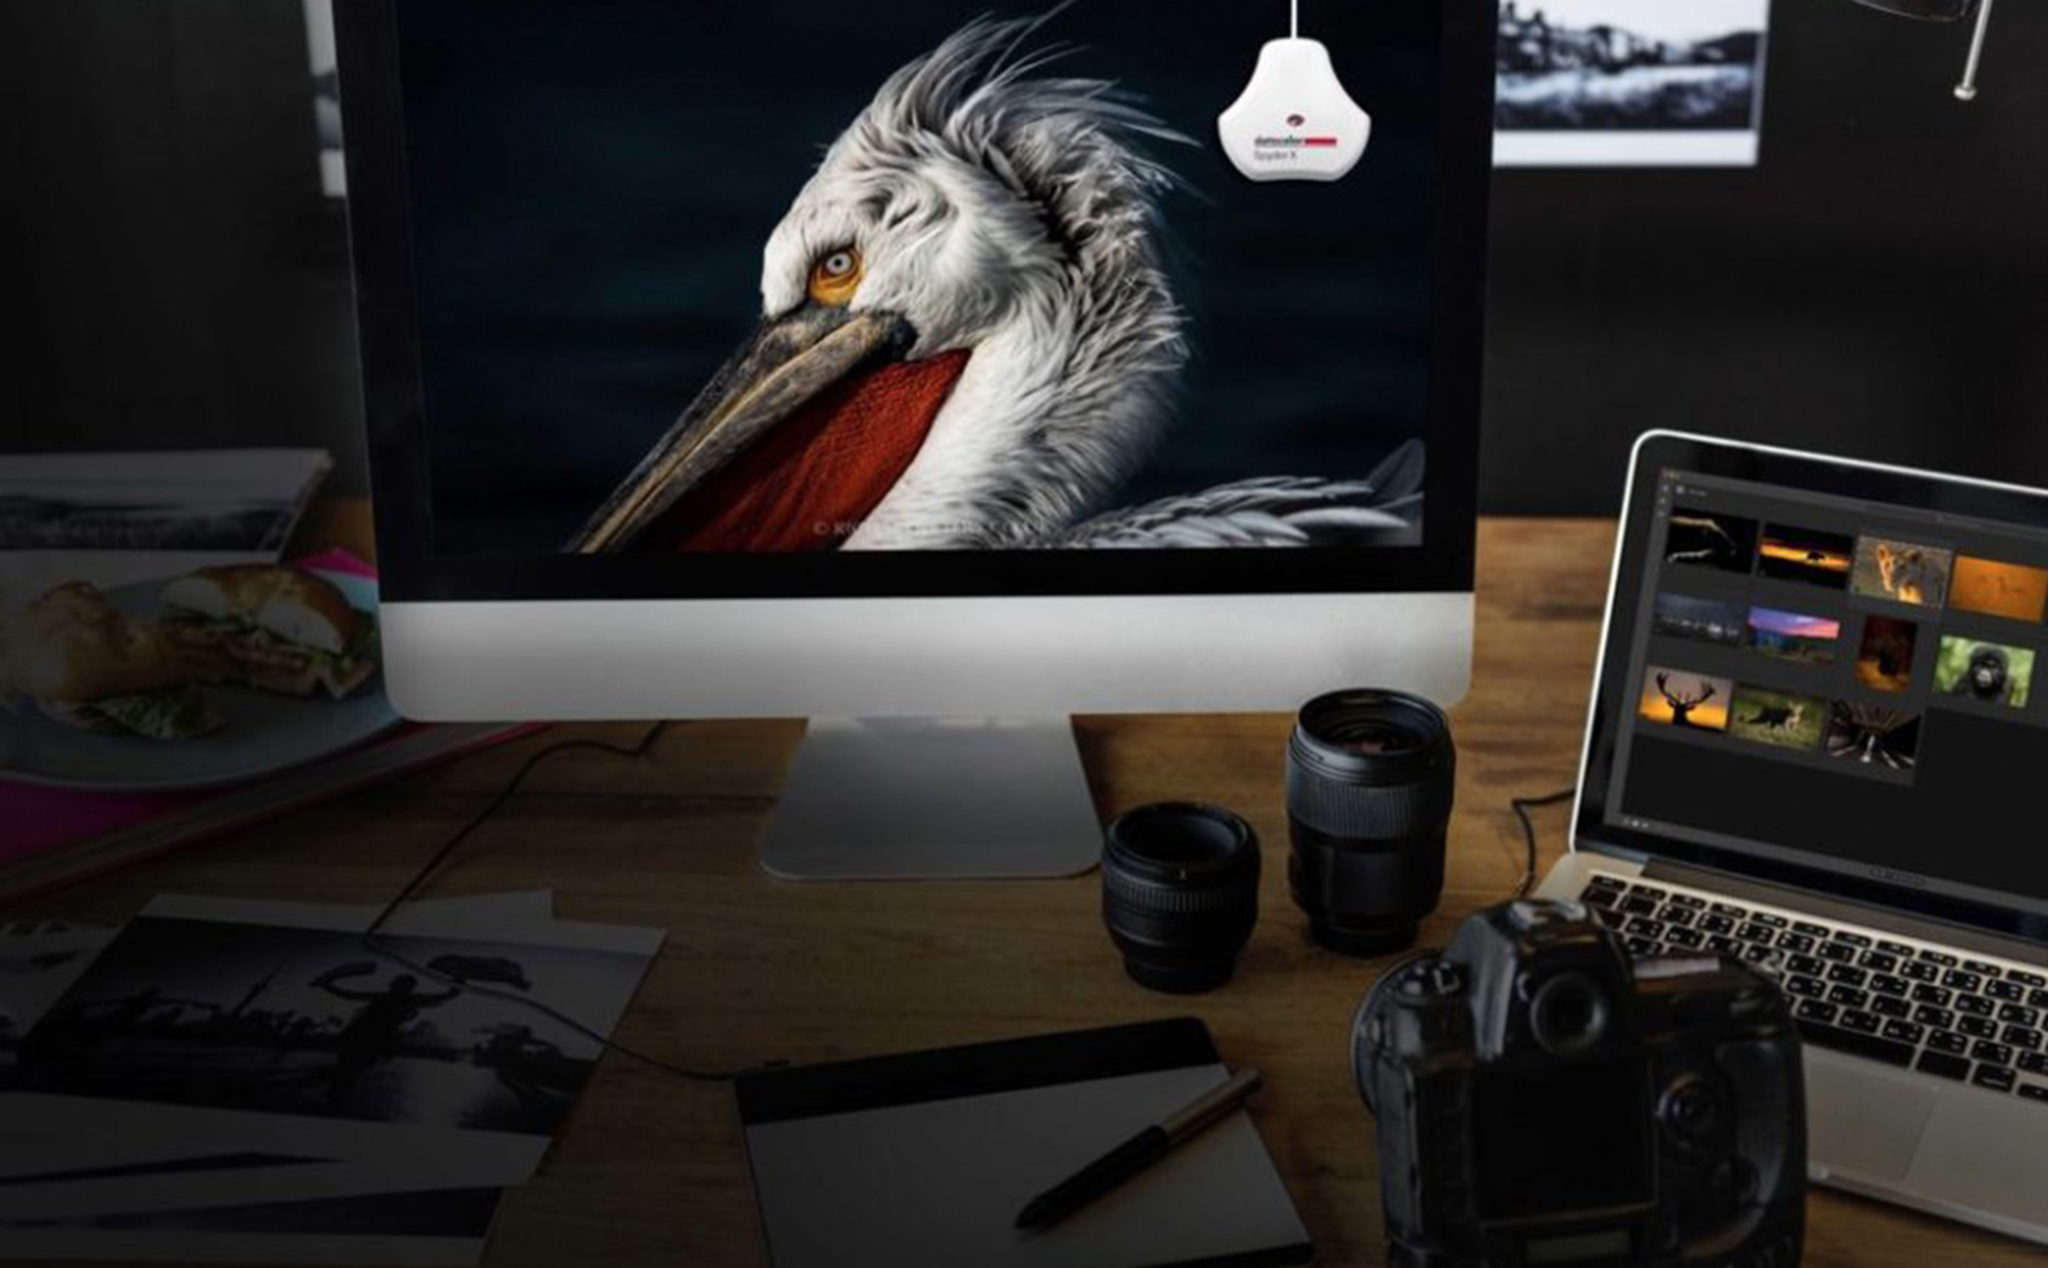 Datacolor ra mắt bộ cân màu màn hình mới có tên SpyderX cho photographer, thiết kế đồ hoạ